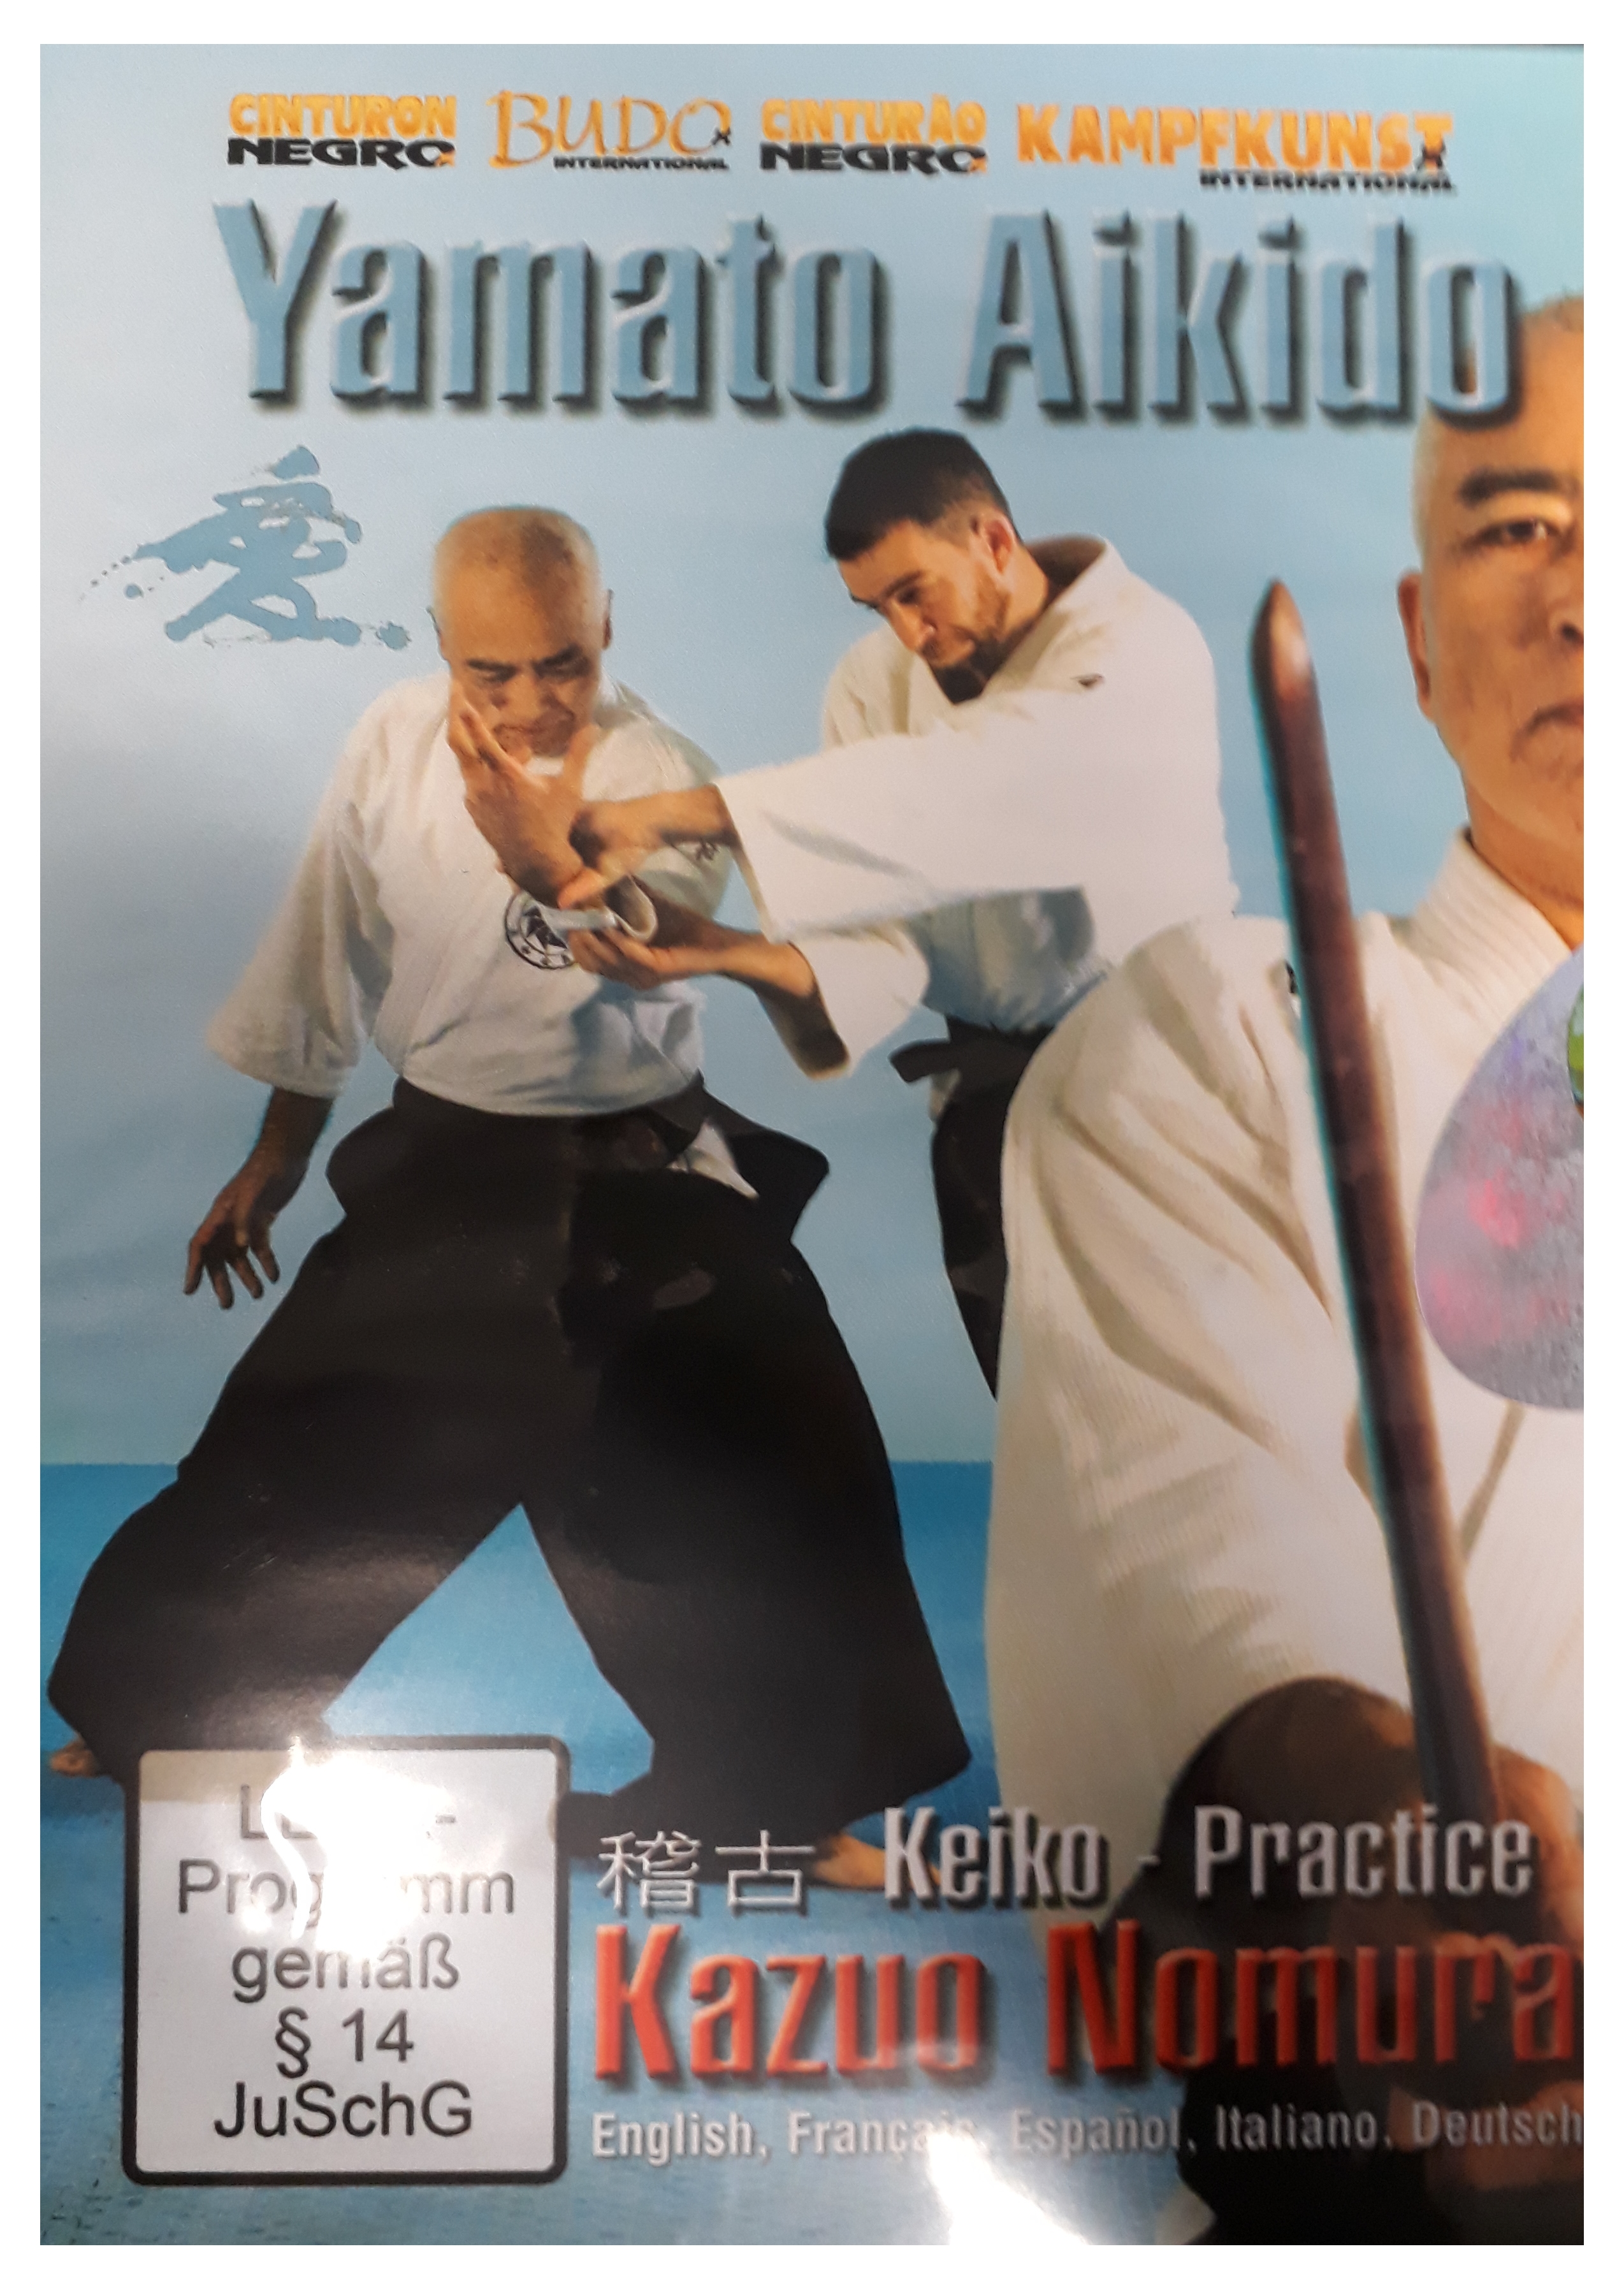 DVD Yamato Aikido Keiko Practice